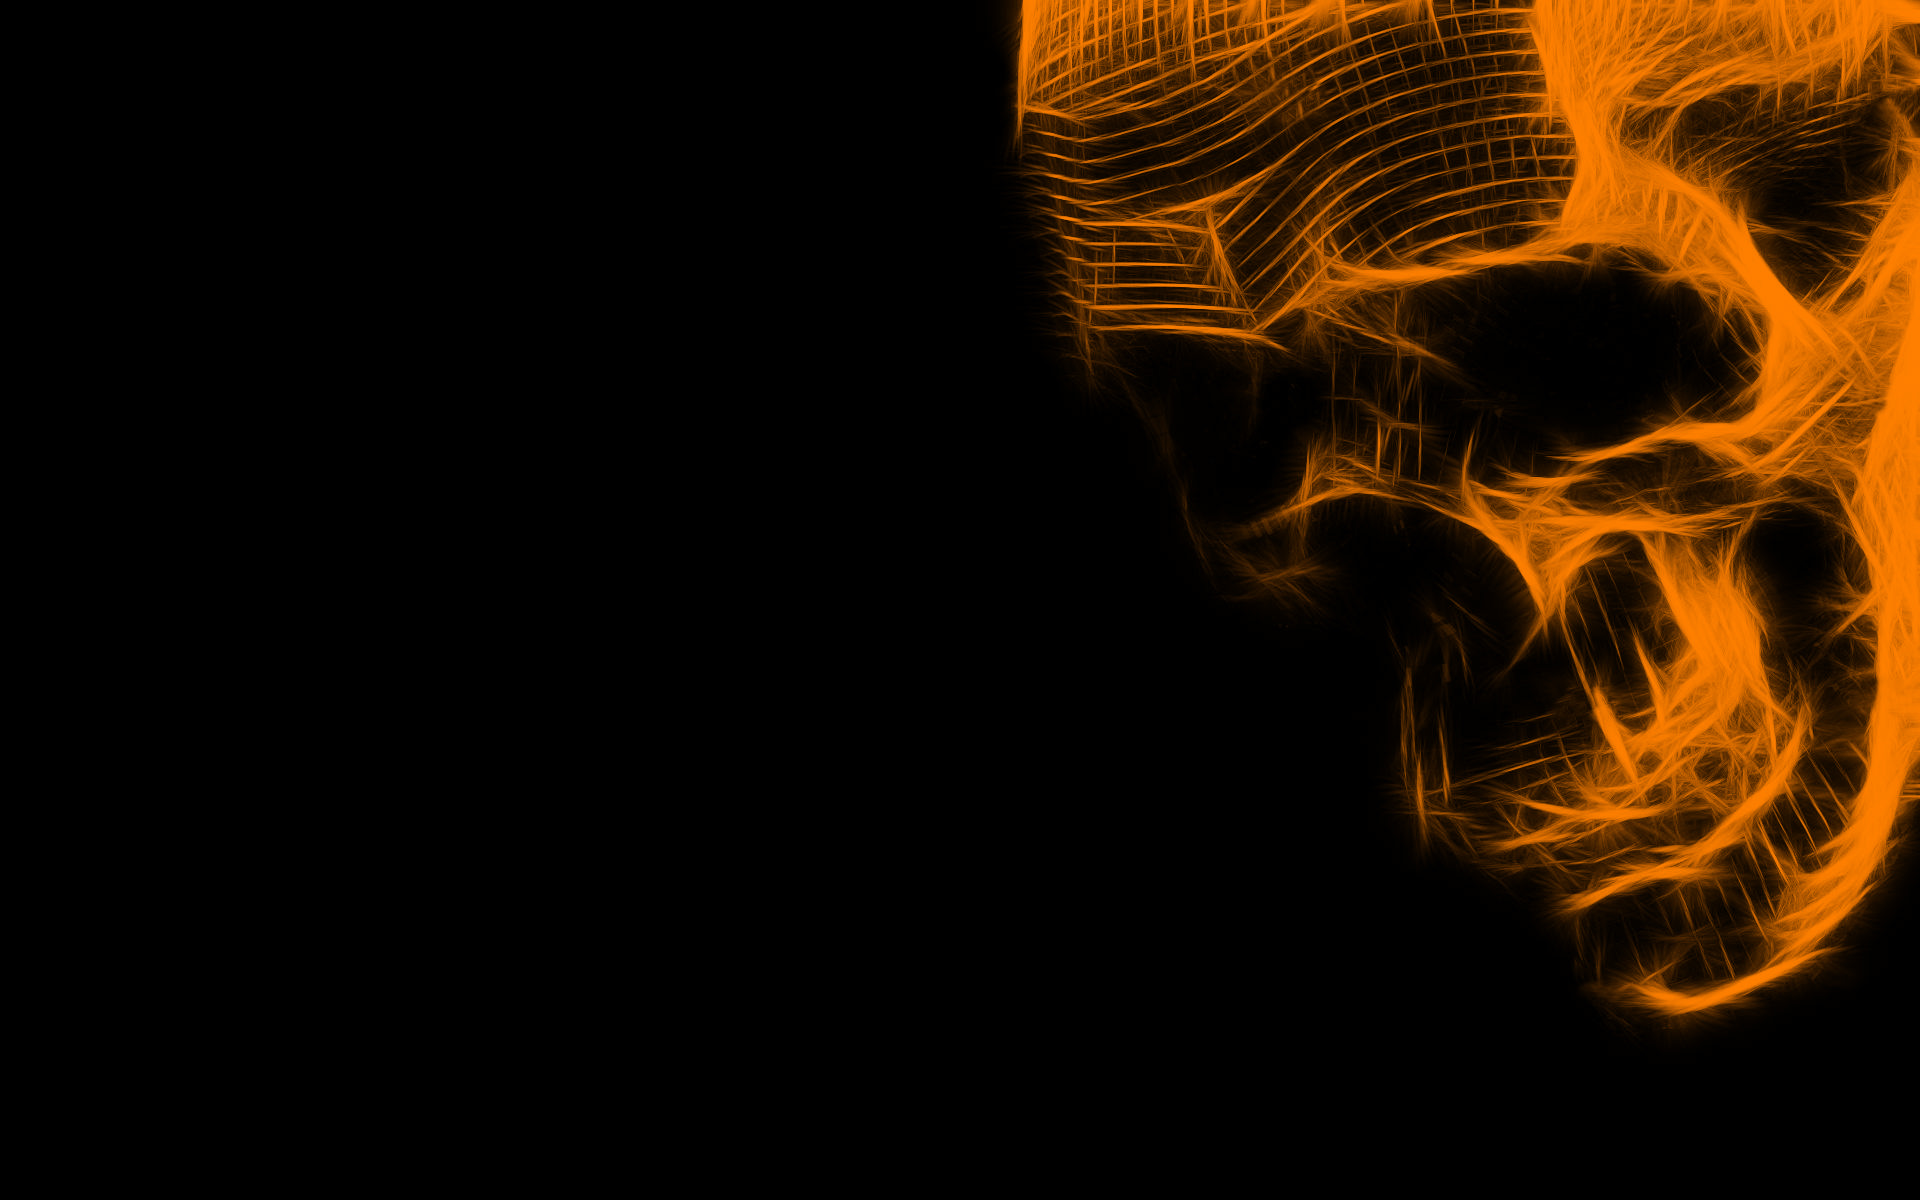 Dark Skull HD Wallpaper | Background Image | 1920x1200 3d Skull Wallpaper Hd